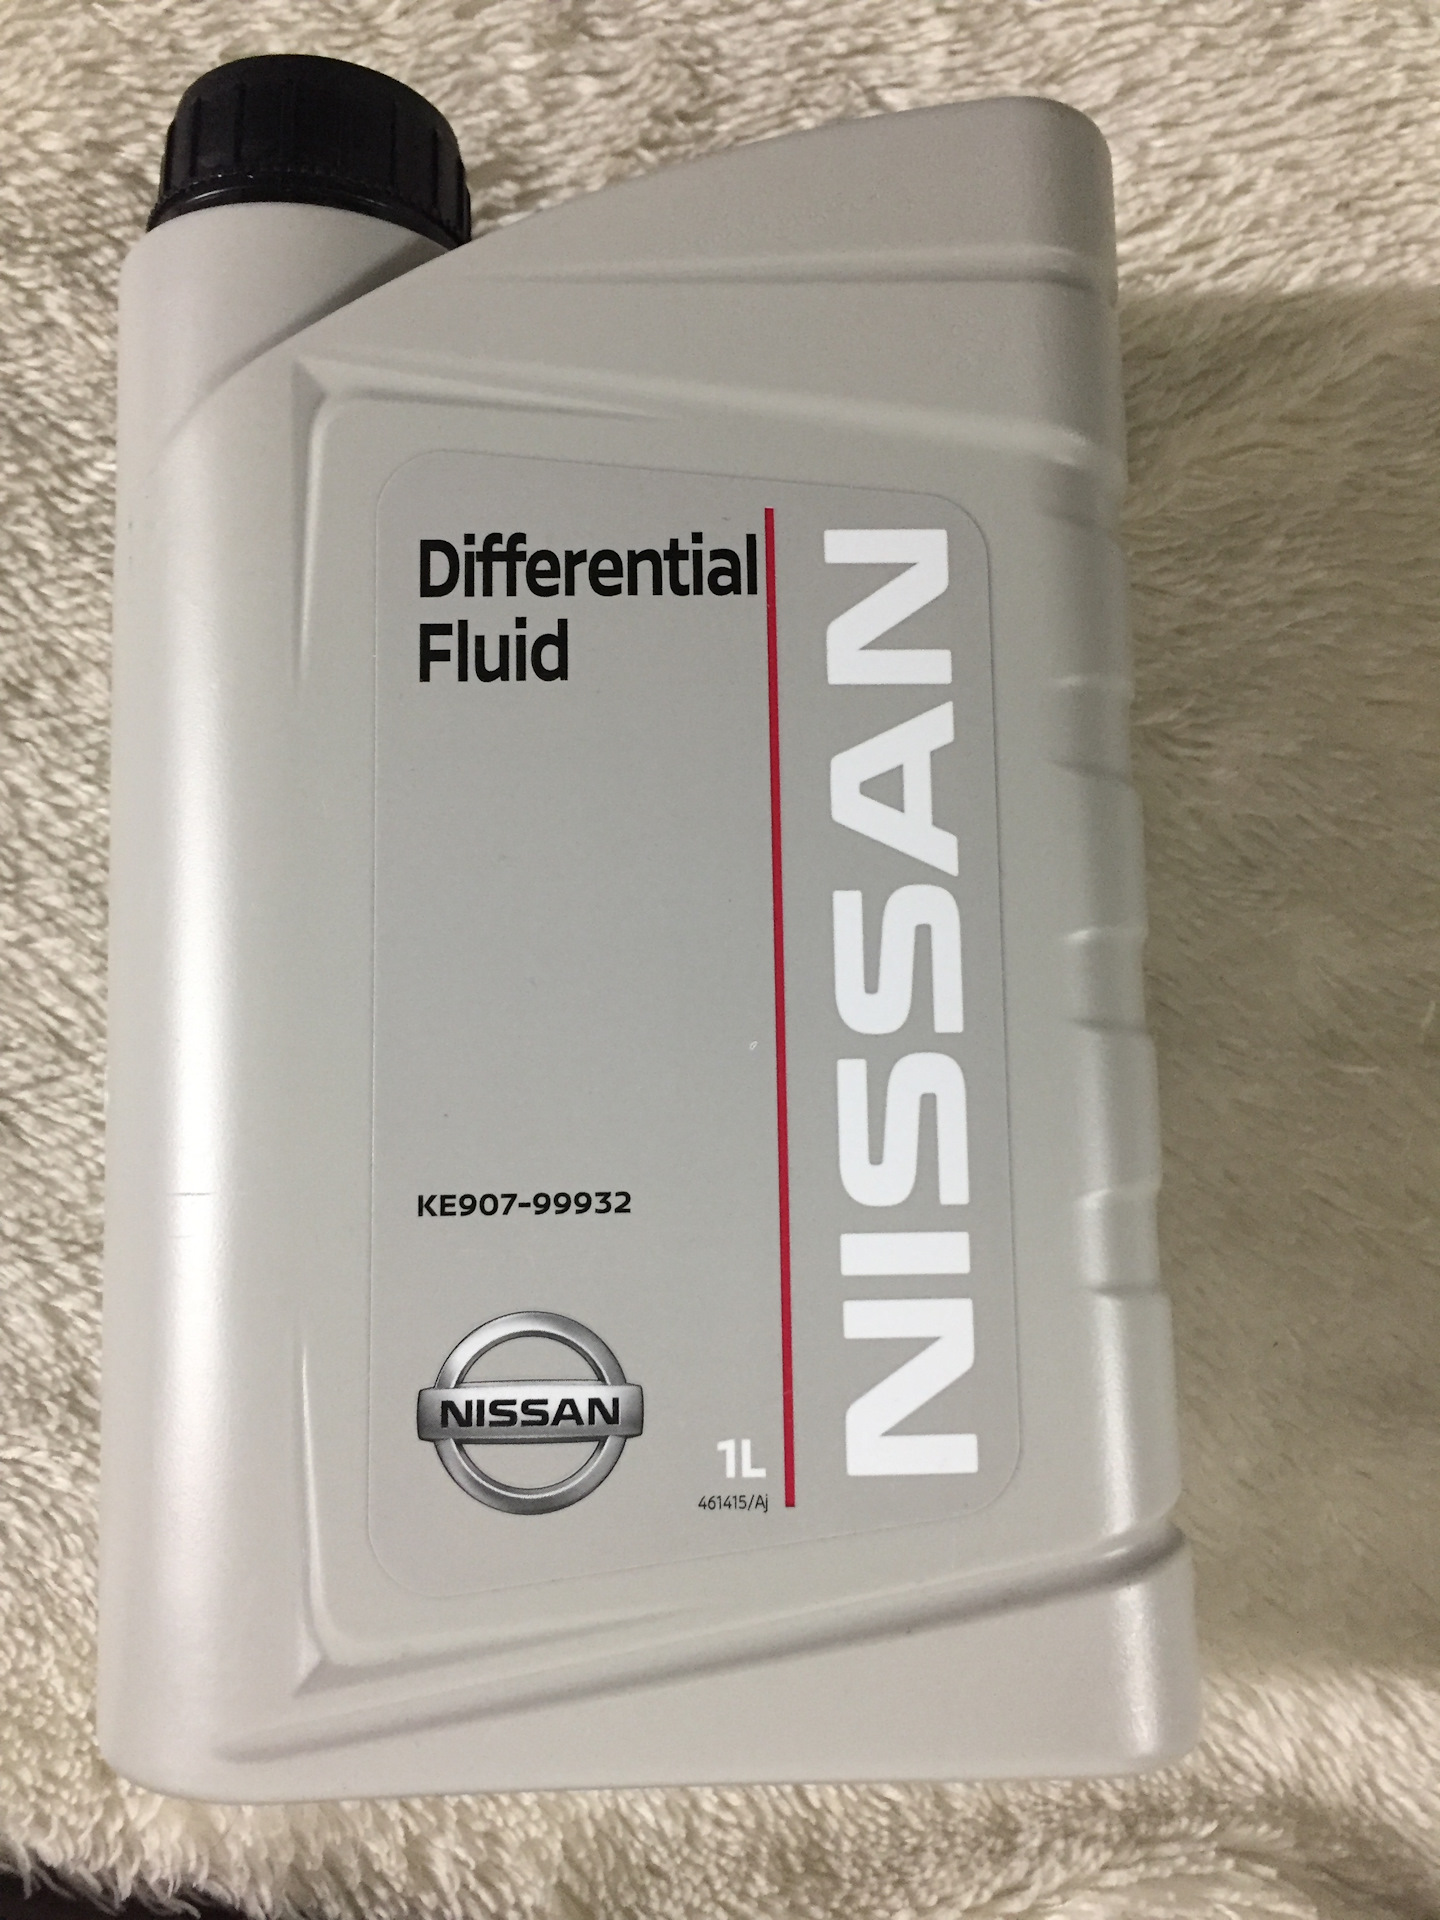 Масло ниссан дифференциал. ATF Nissan matic j 5л. Nissan ATF matic j Fluid. Nissan Differential Fluid(ke907-99932). Ke907-99932 gl-5 80w90.